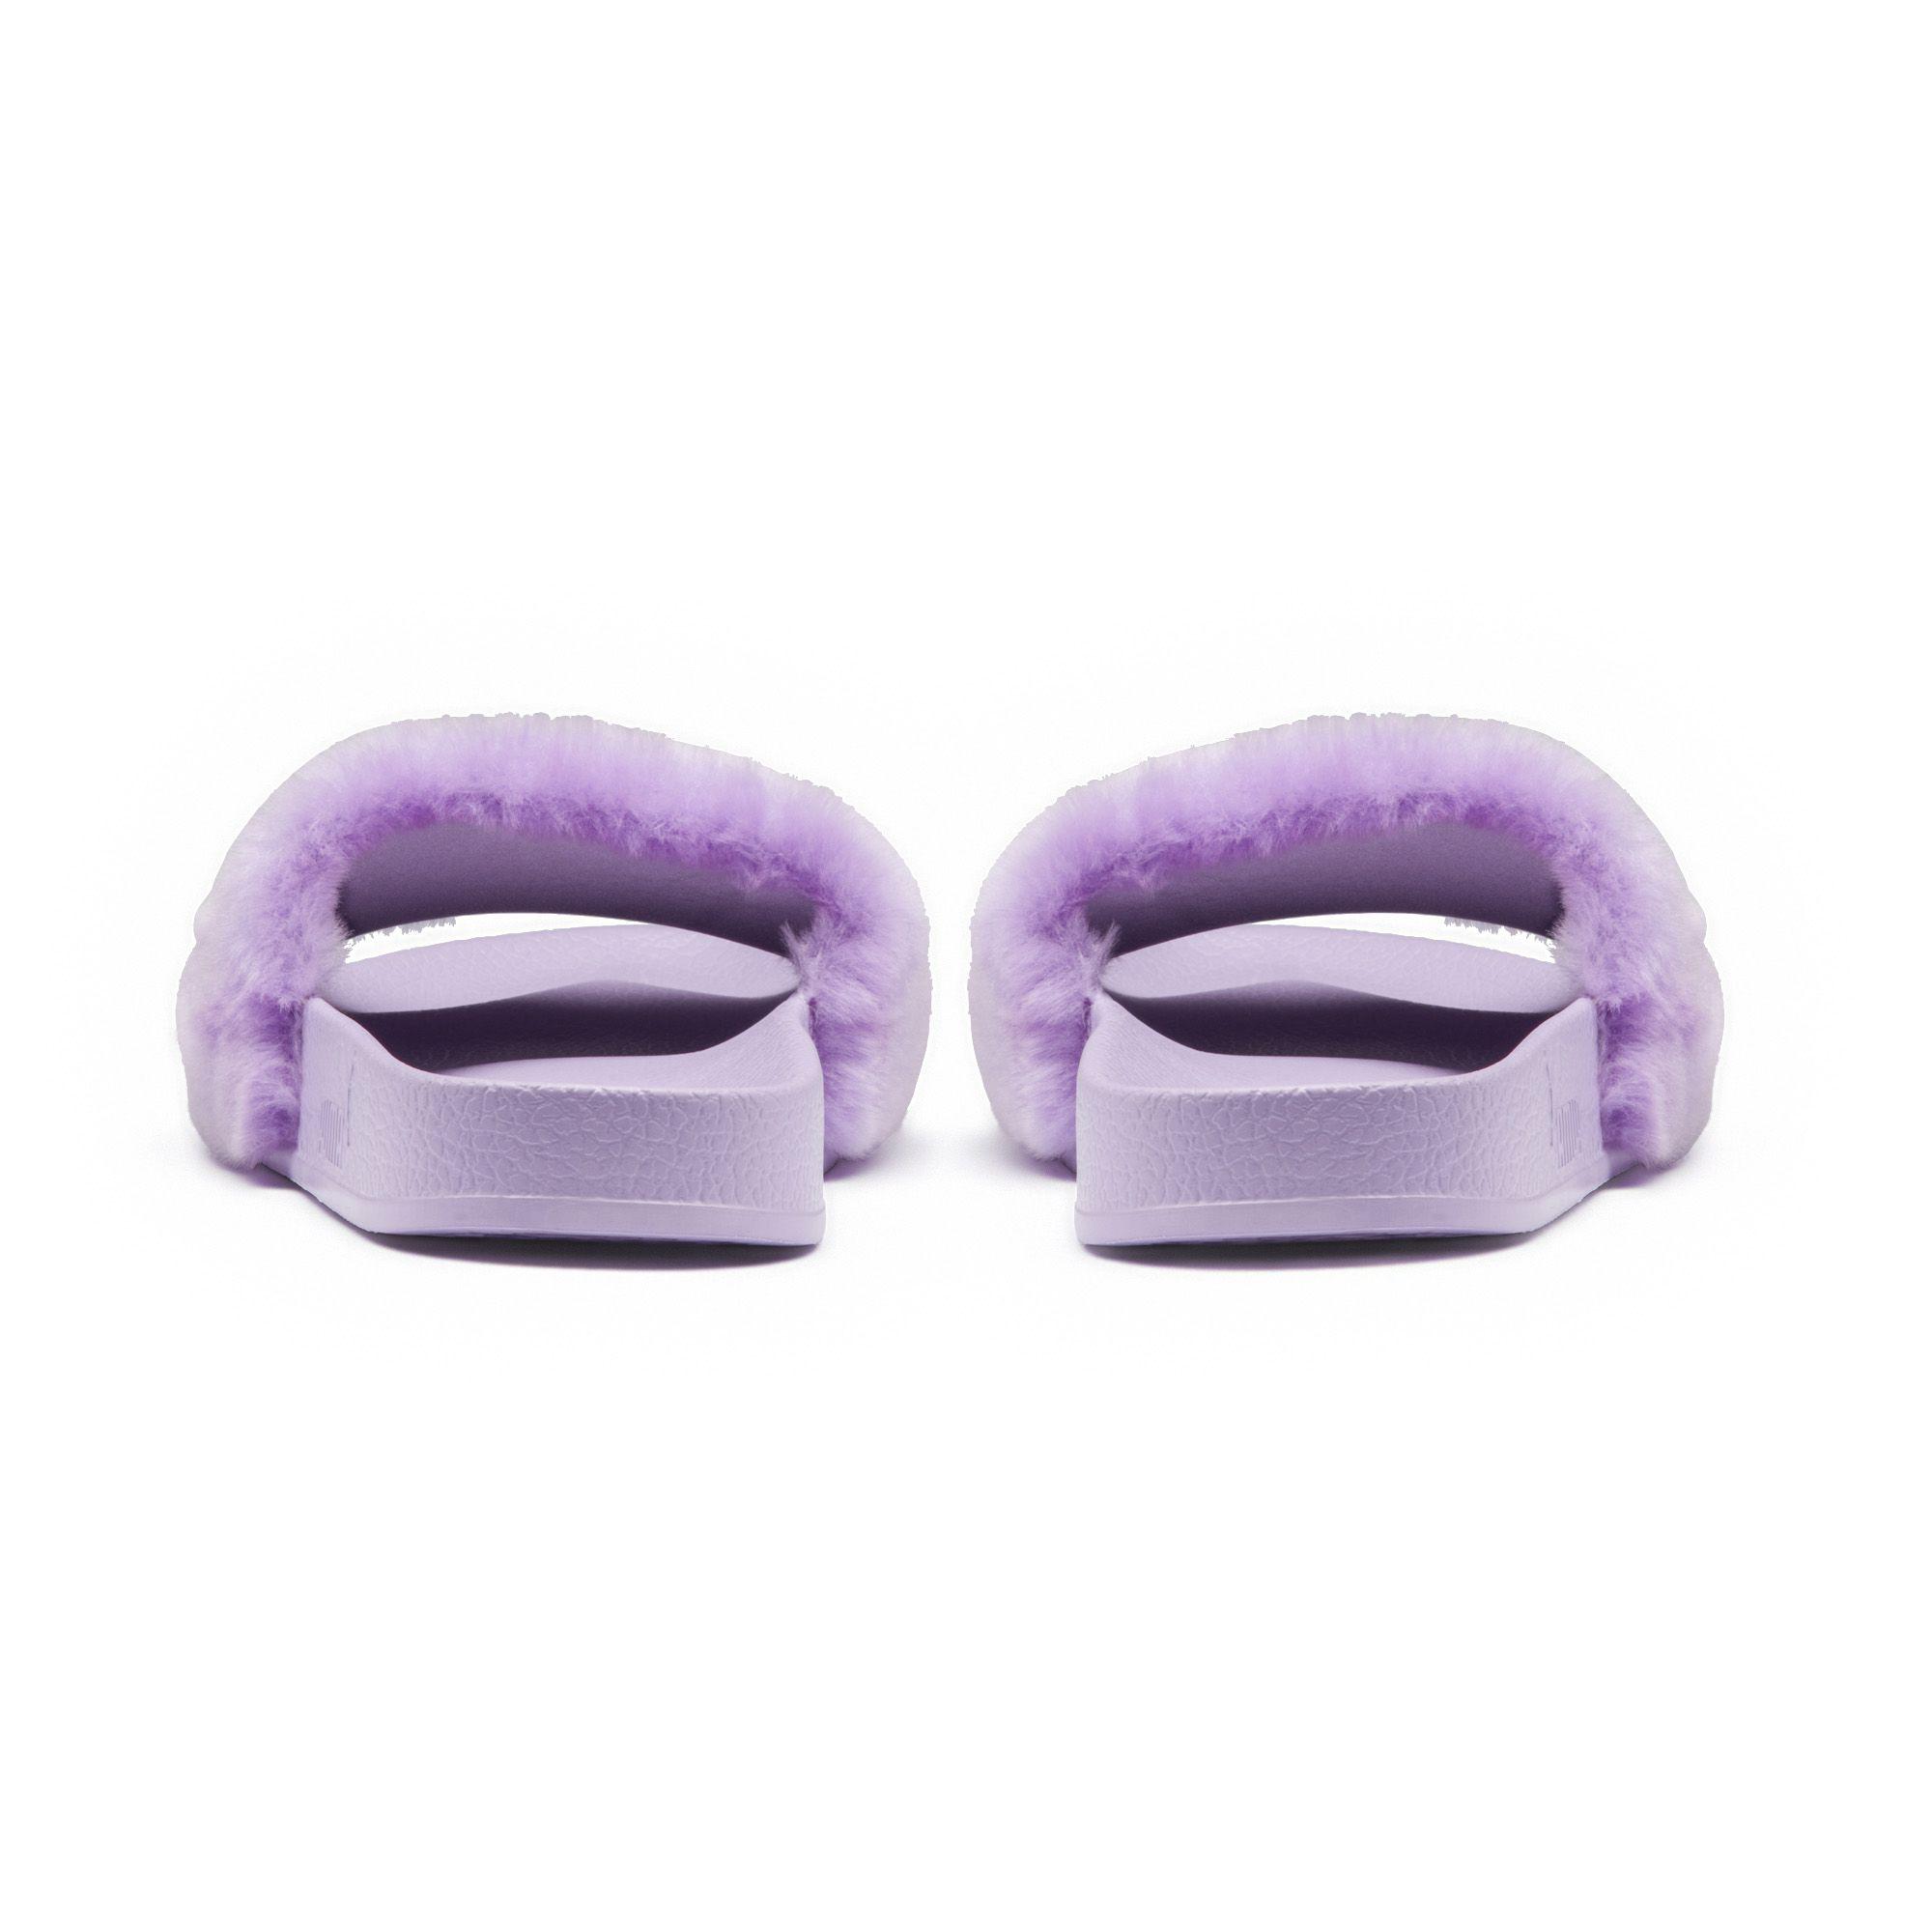 puma fenty slides purple